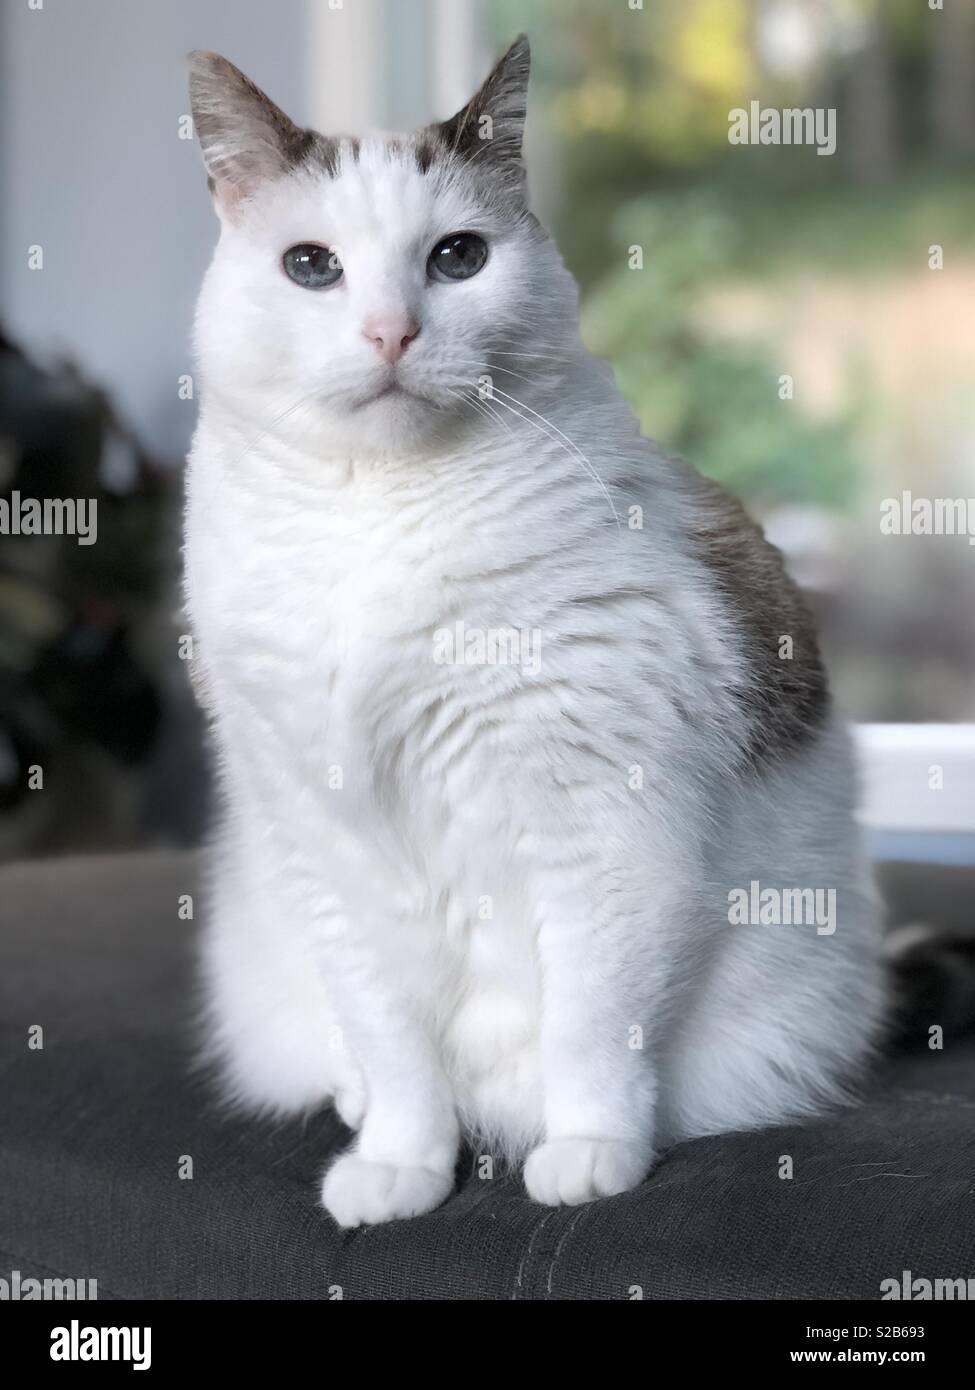 Un chat blanc avec de grands yeux bleus. Banque D'Images